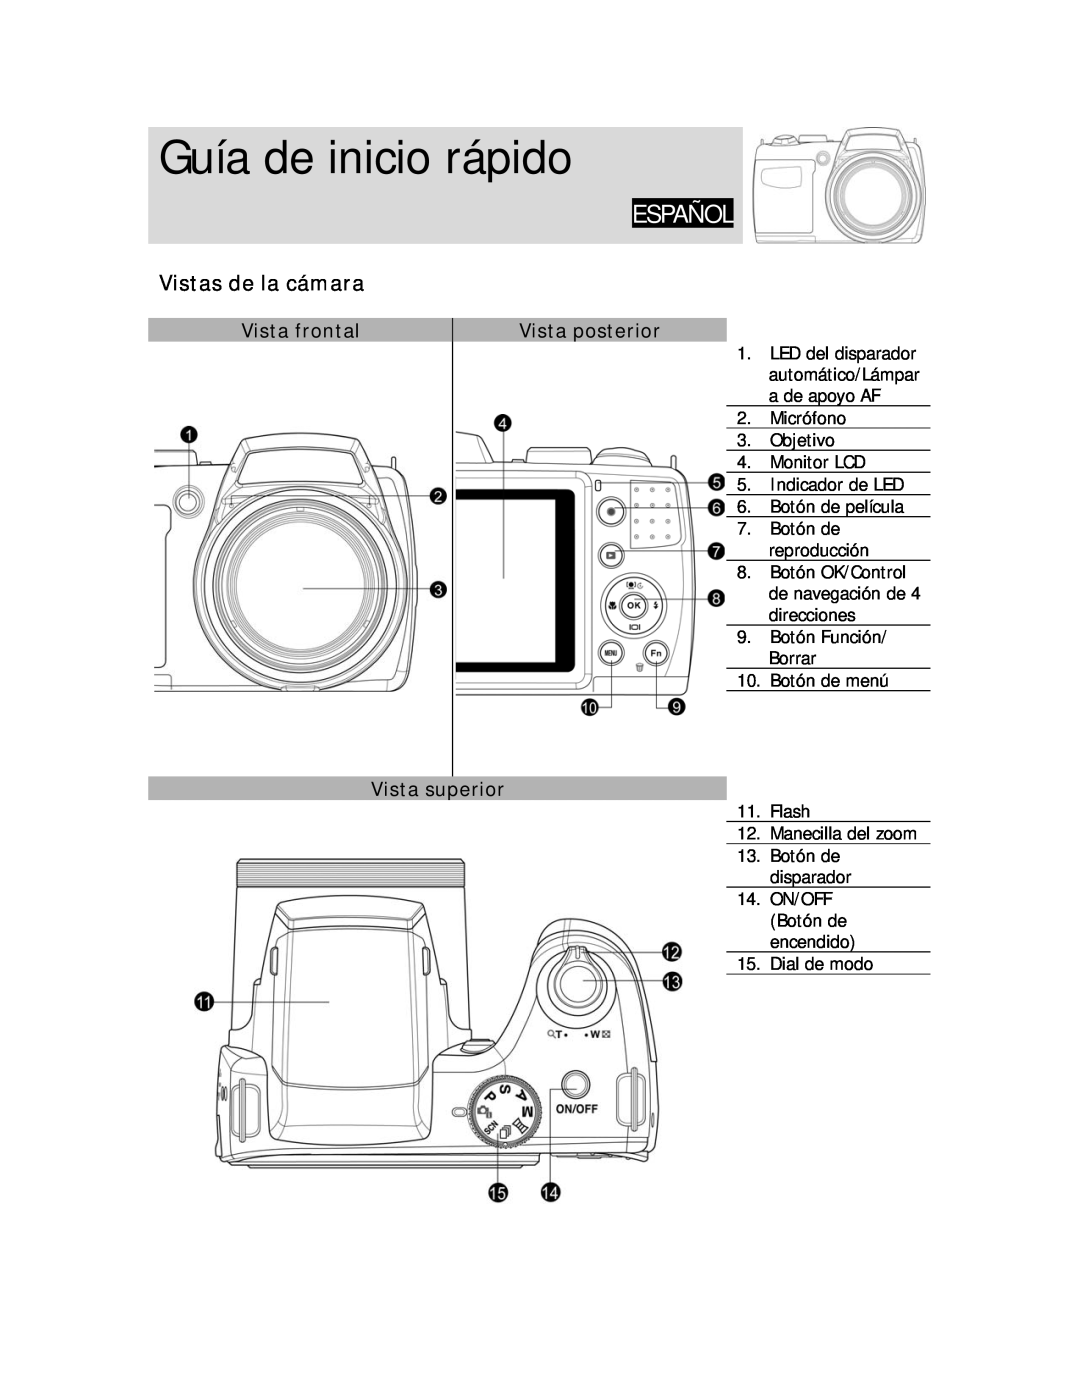 HP D-3000 manual Vistas de la cámara, Vista frontal, Vista posterior, Vista superior, Guía de inicio rápido, Español 